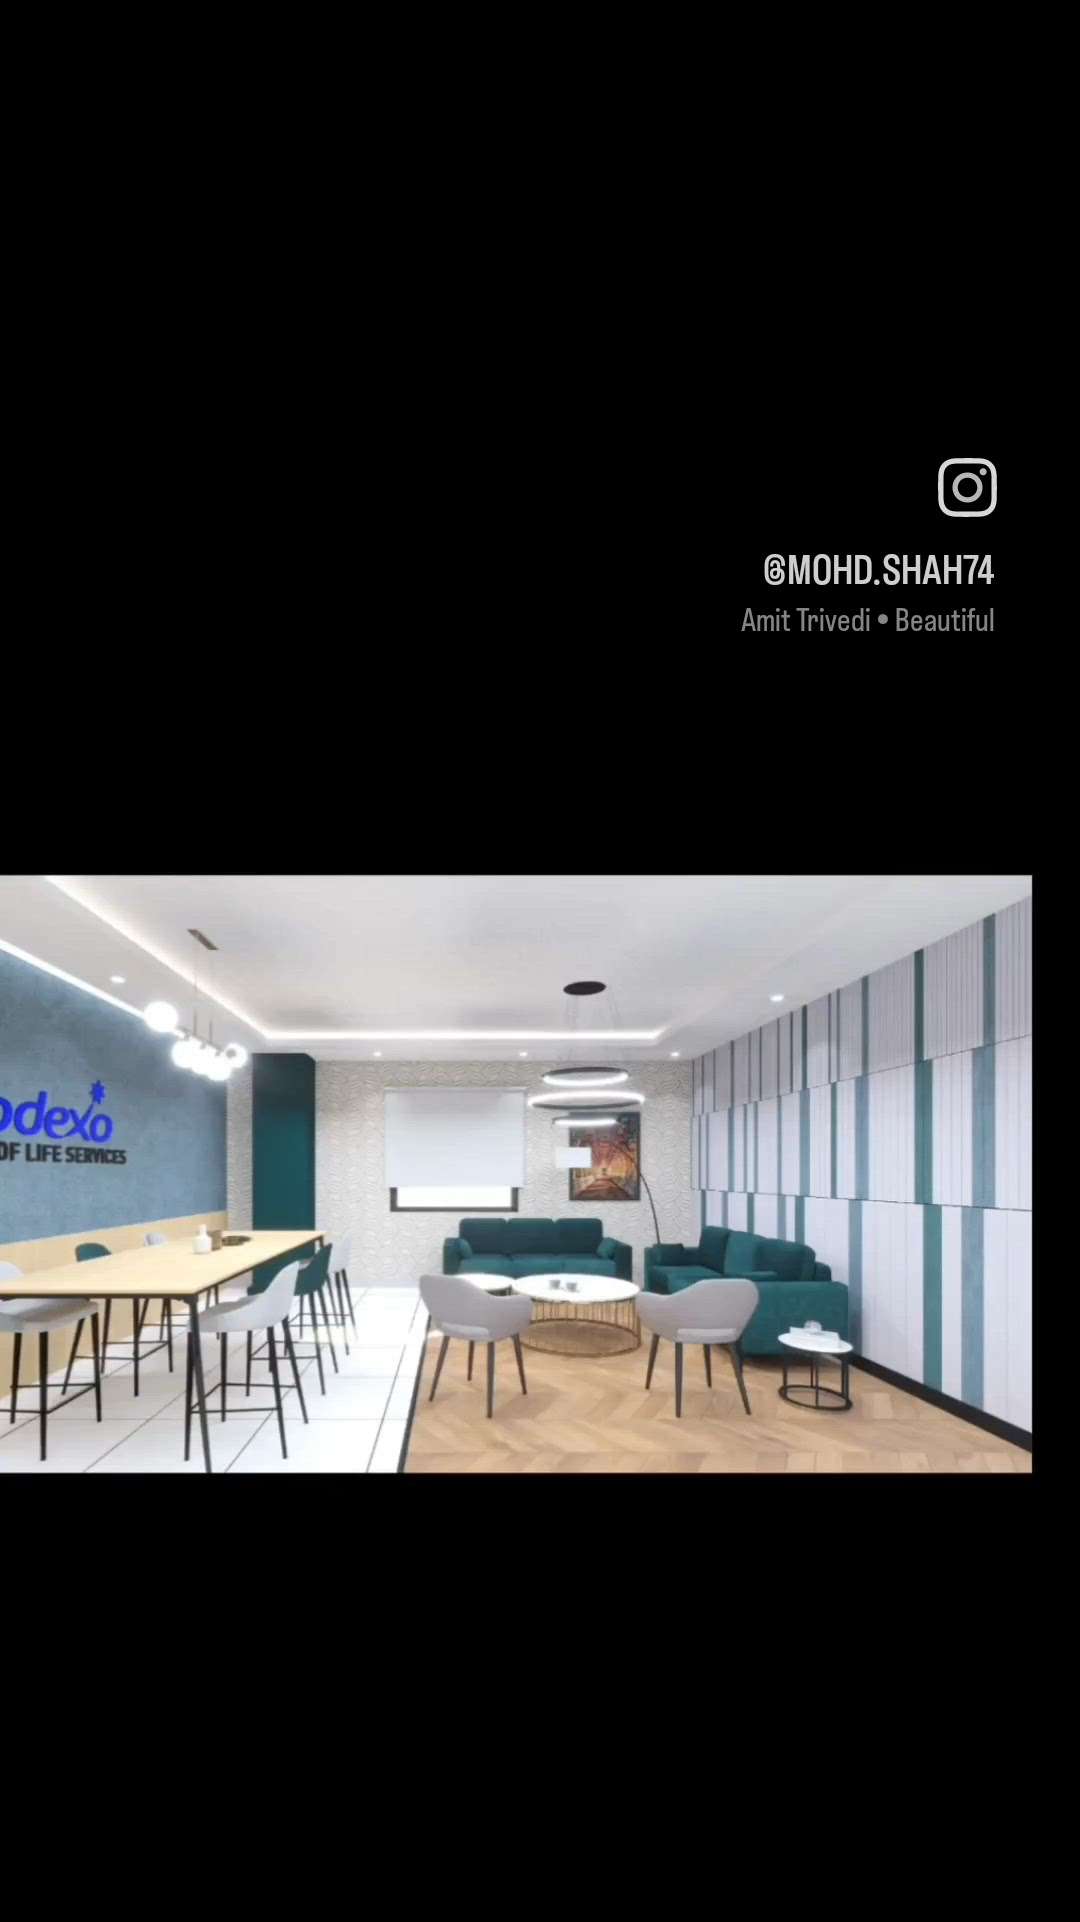 3D Render // Office Meeting Room Design
#3dvisualizer #3dplanning #3dmaxcorona #3dmodel #3dmaxvray #office #sayyedinteriordesigns #sayyedinteriordesigner #sayyedmohdshah #InteriorDesigner